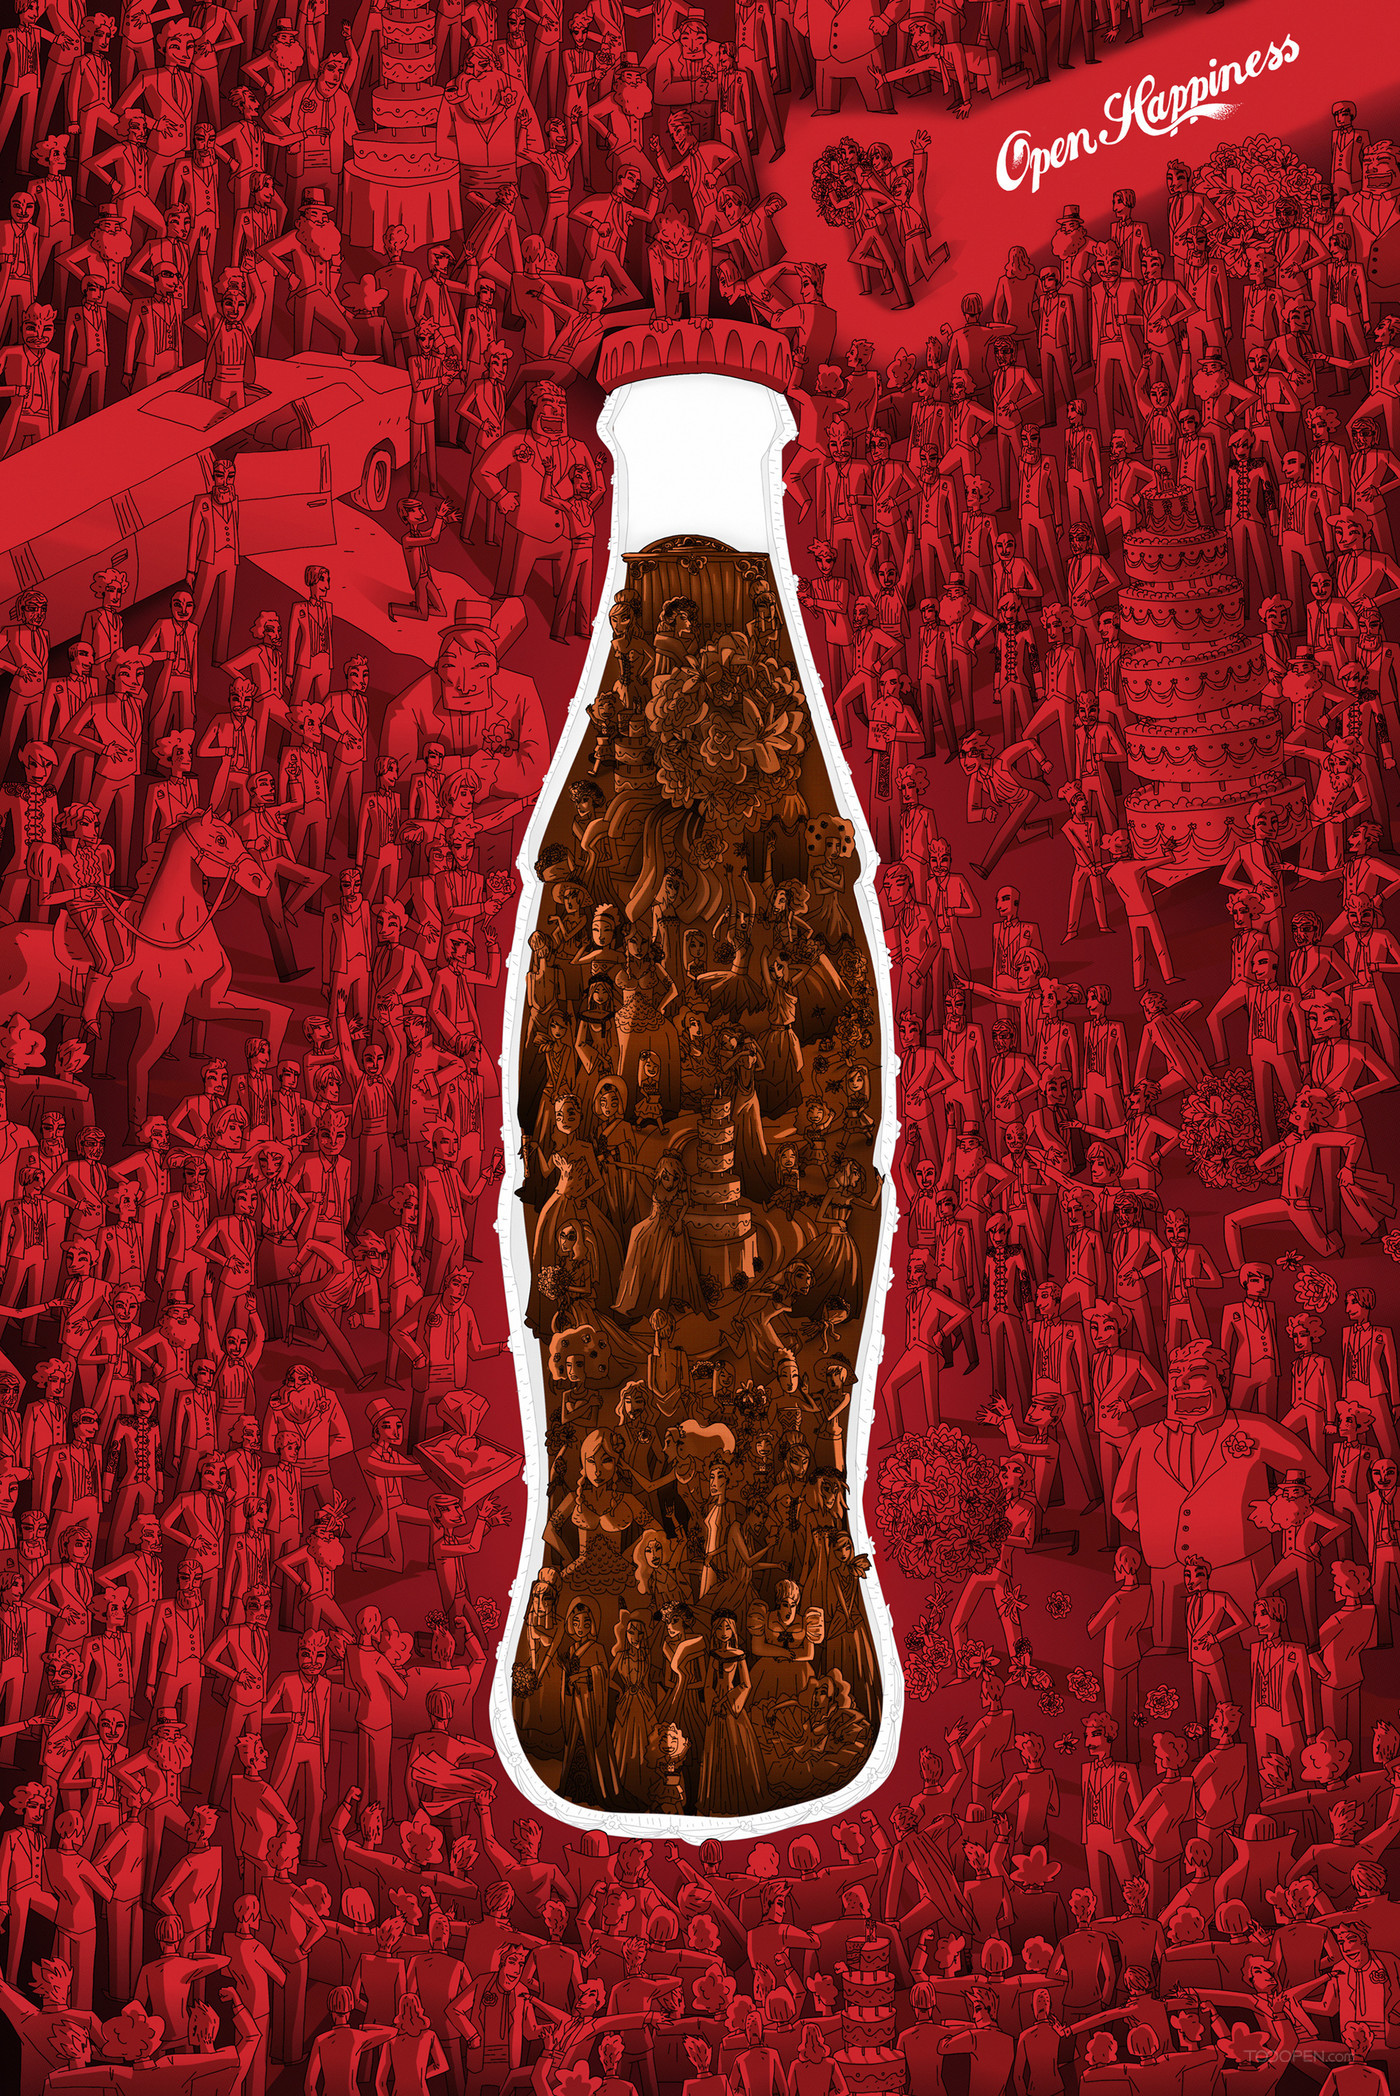 可口可乐碳酸饮料平面广告海报设计欣赏-04